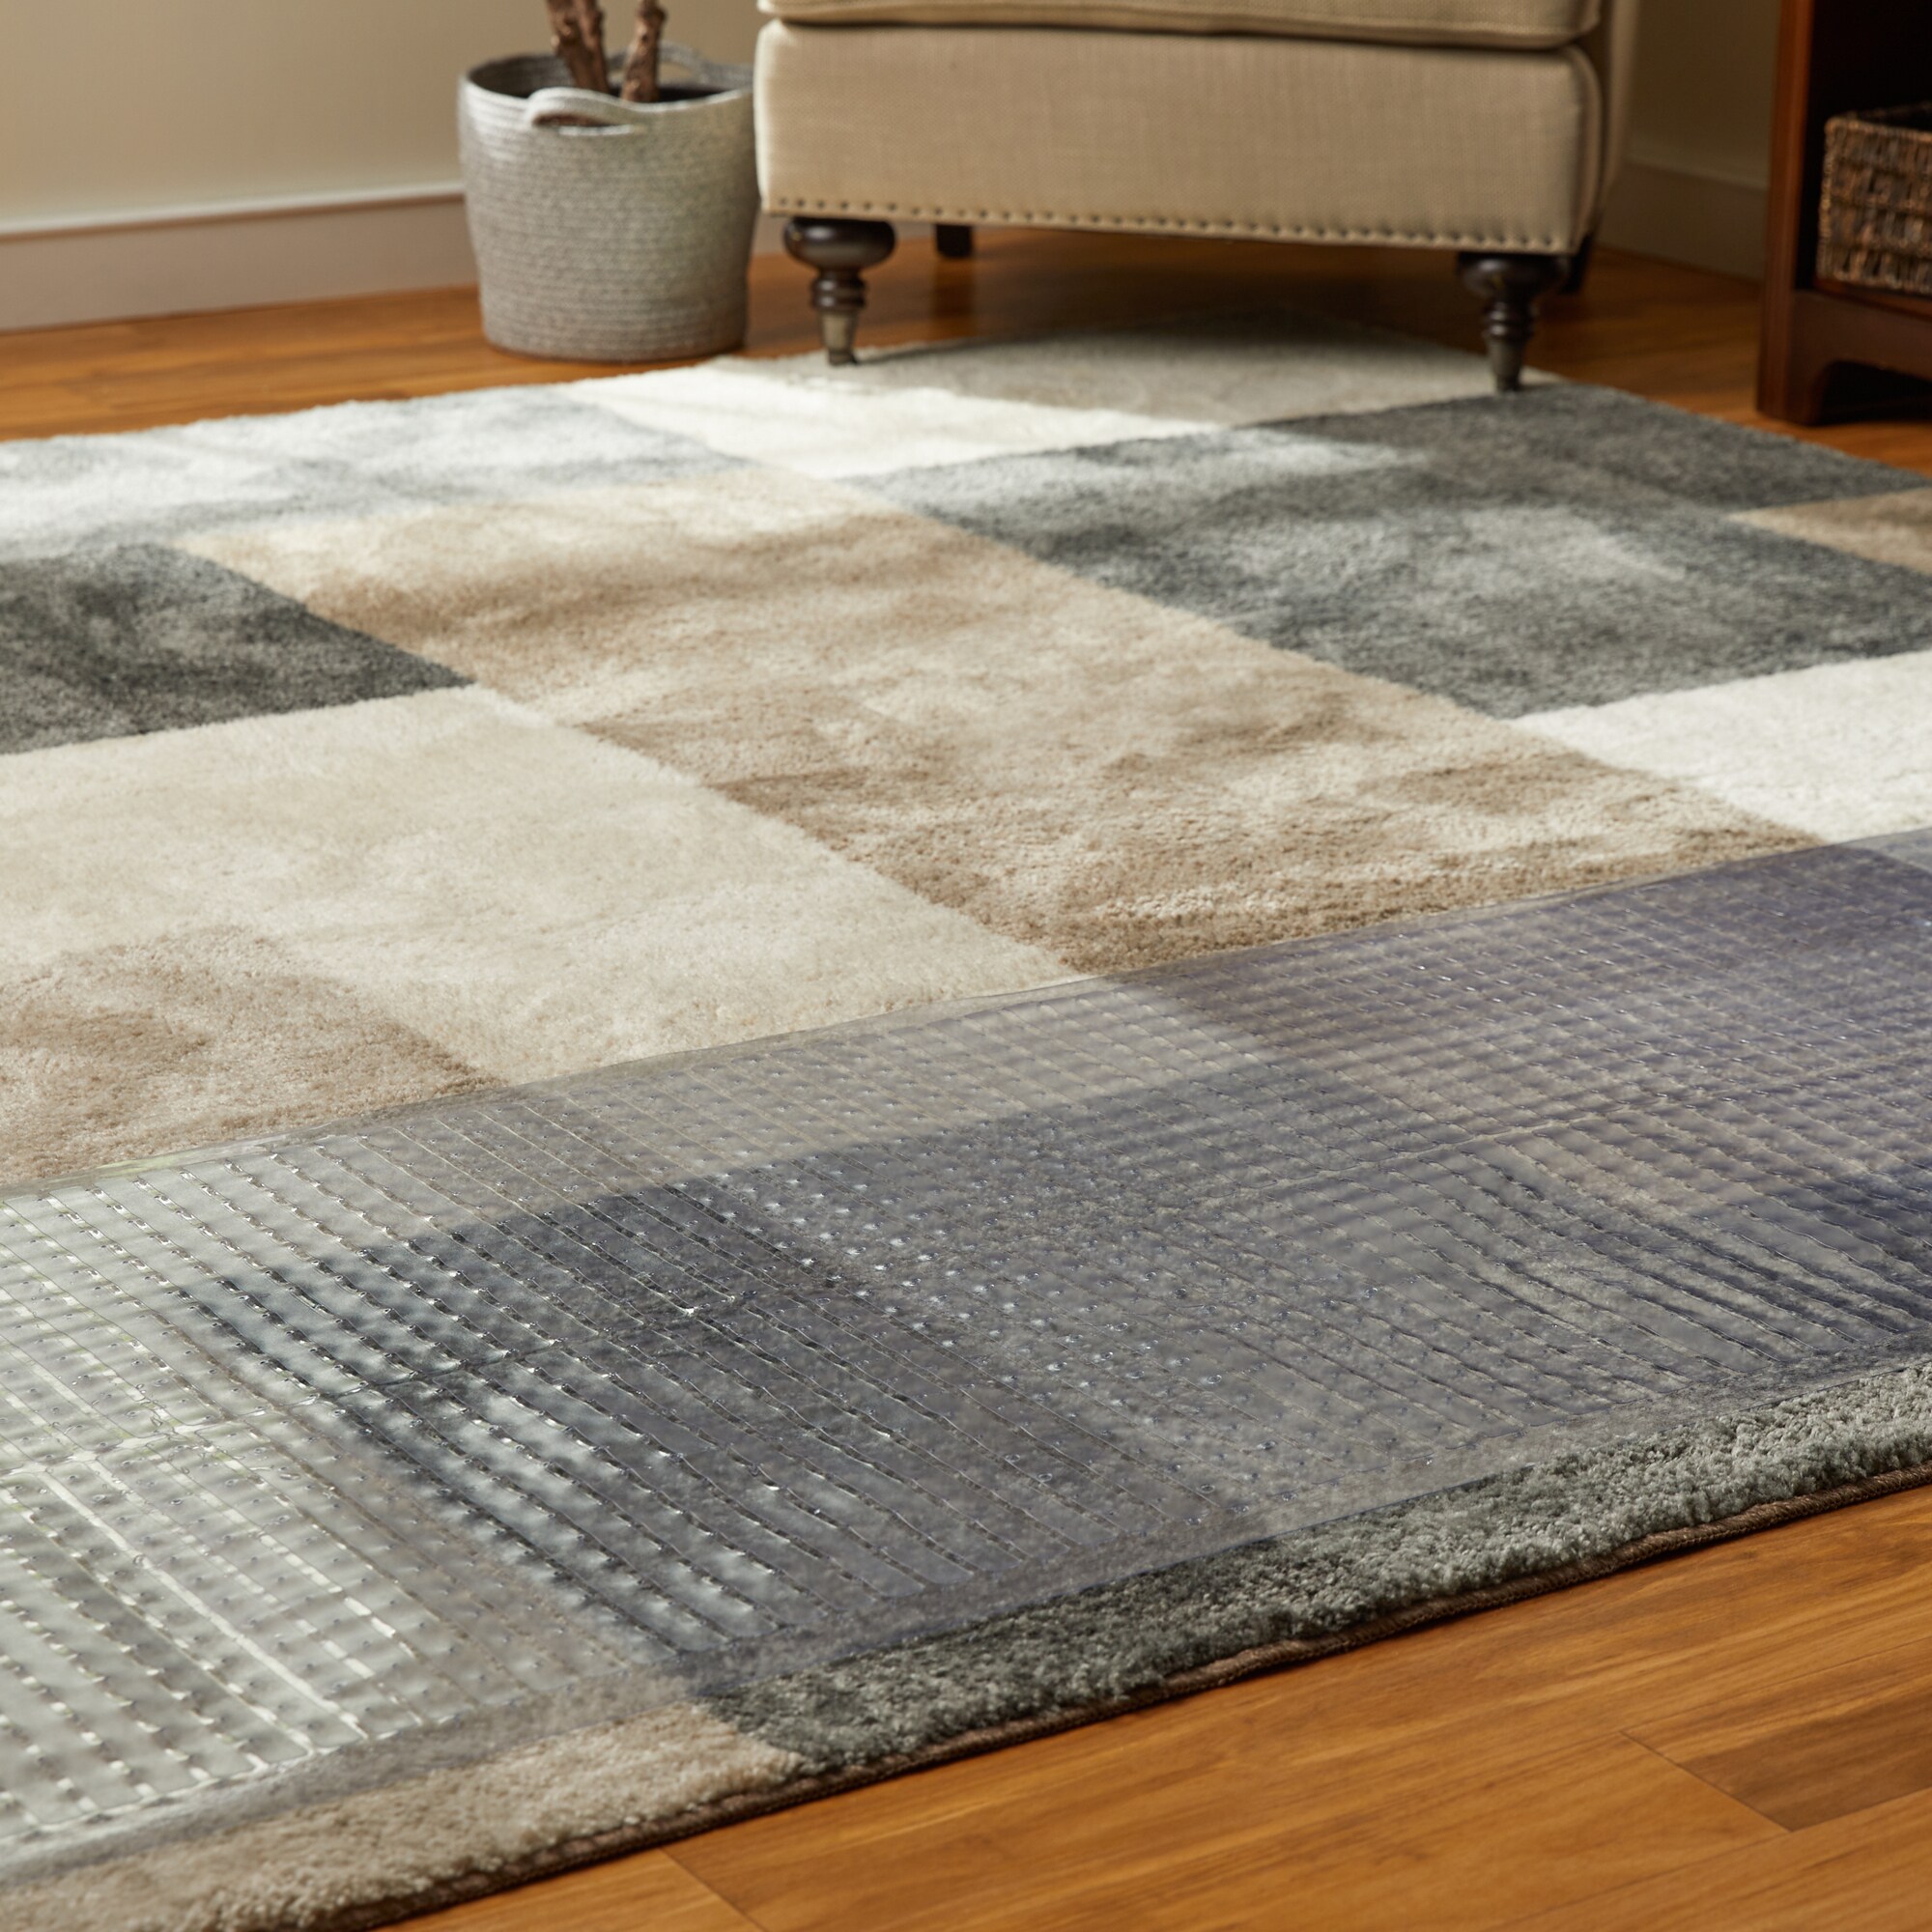 Durable Vinyl Plastic Carpet protection mat runner